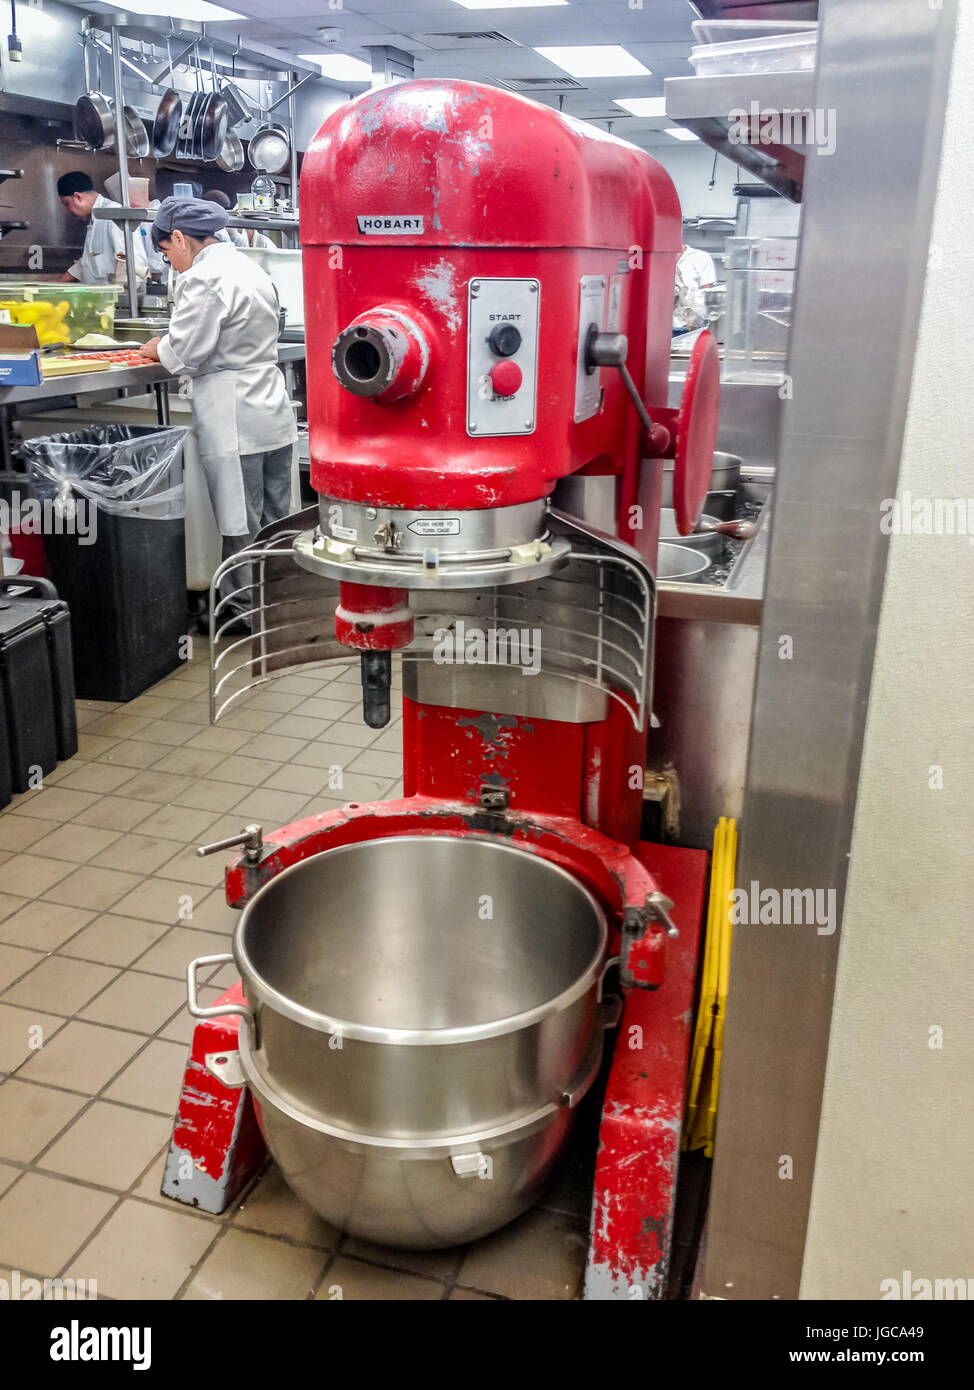 Große rote industrielle Mischer mit einer leeren sauberen Edelstahlschüssel in einer Bäckerei mit Menschen arbeiten bei Küchenarbeitsplatten im Hintergrund Stockfoto